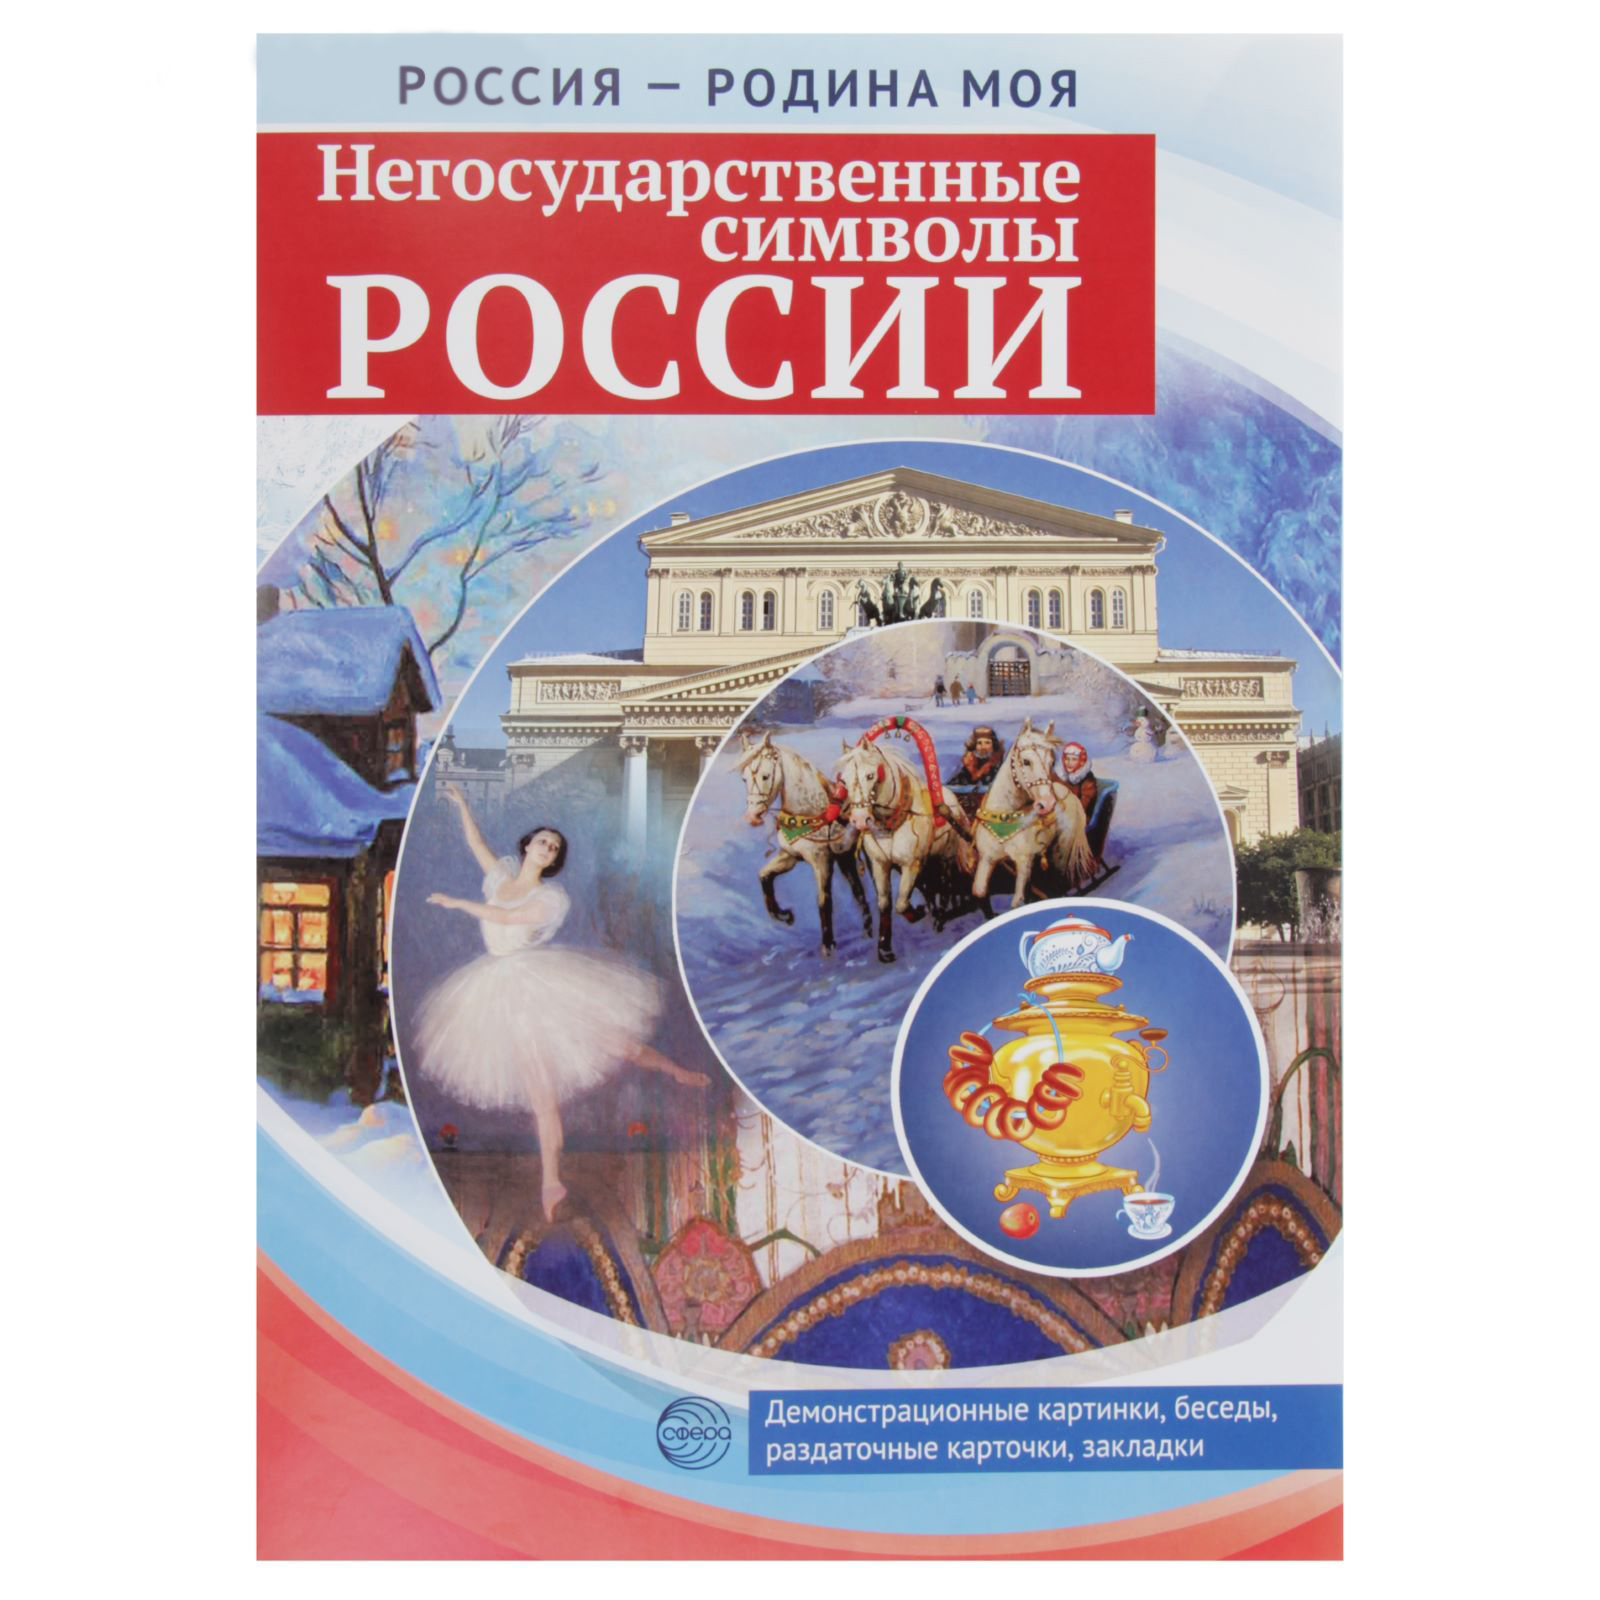 Набор карточек Россия - Родина моя - Негосударственные символы